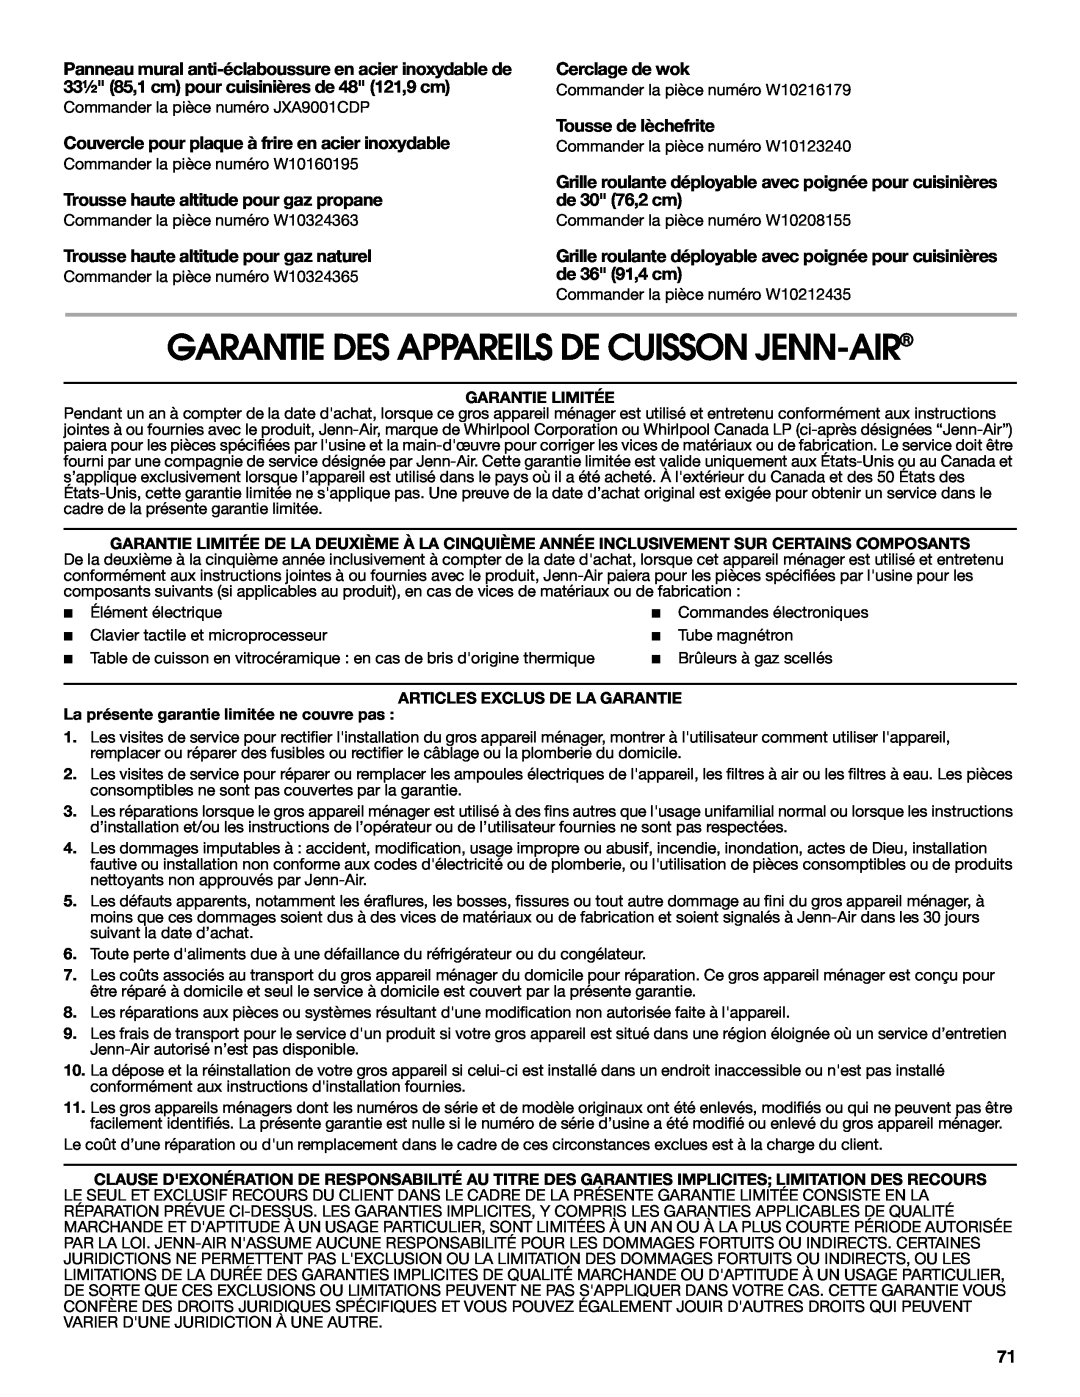 Jenn-Air JGRP436 manual Garantie Des Appareils De Cuisson Jenn-Air, Panneau mural anti-éclaboussure en acier inoxydable de 